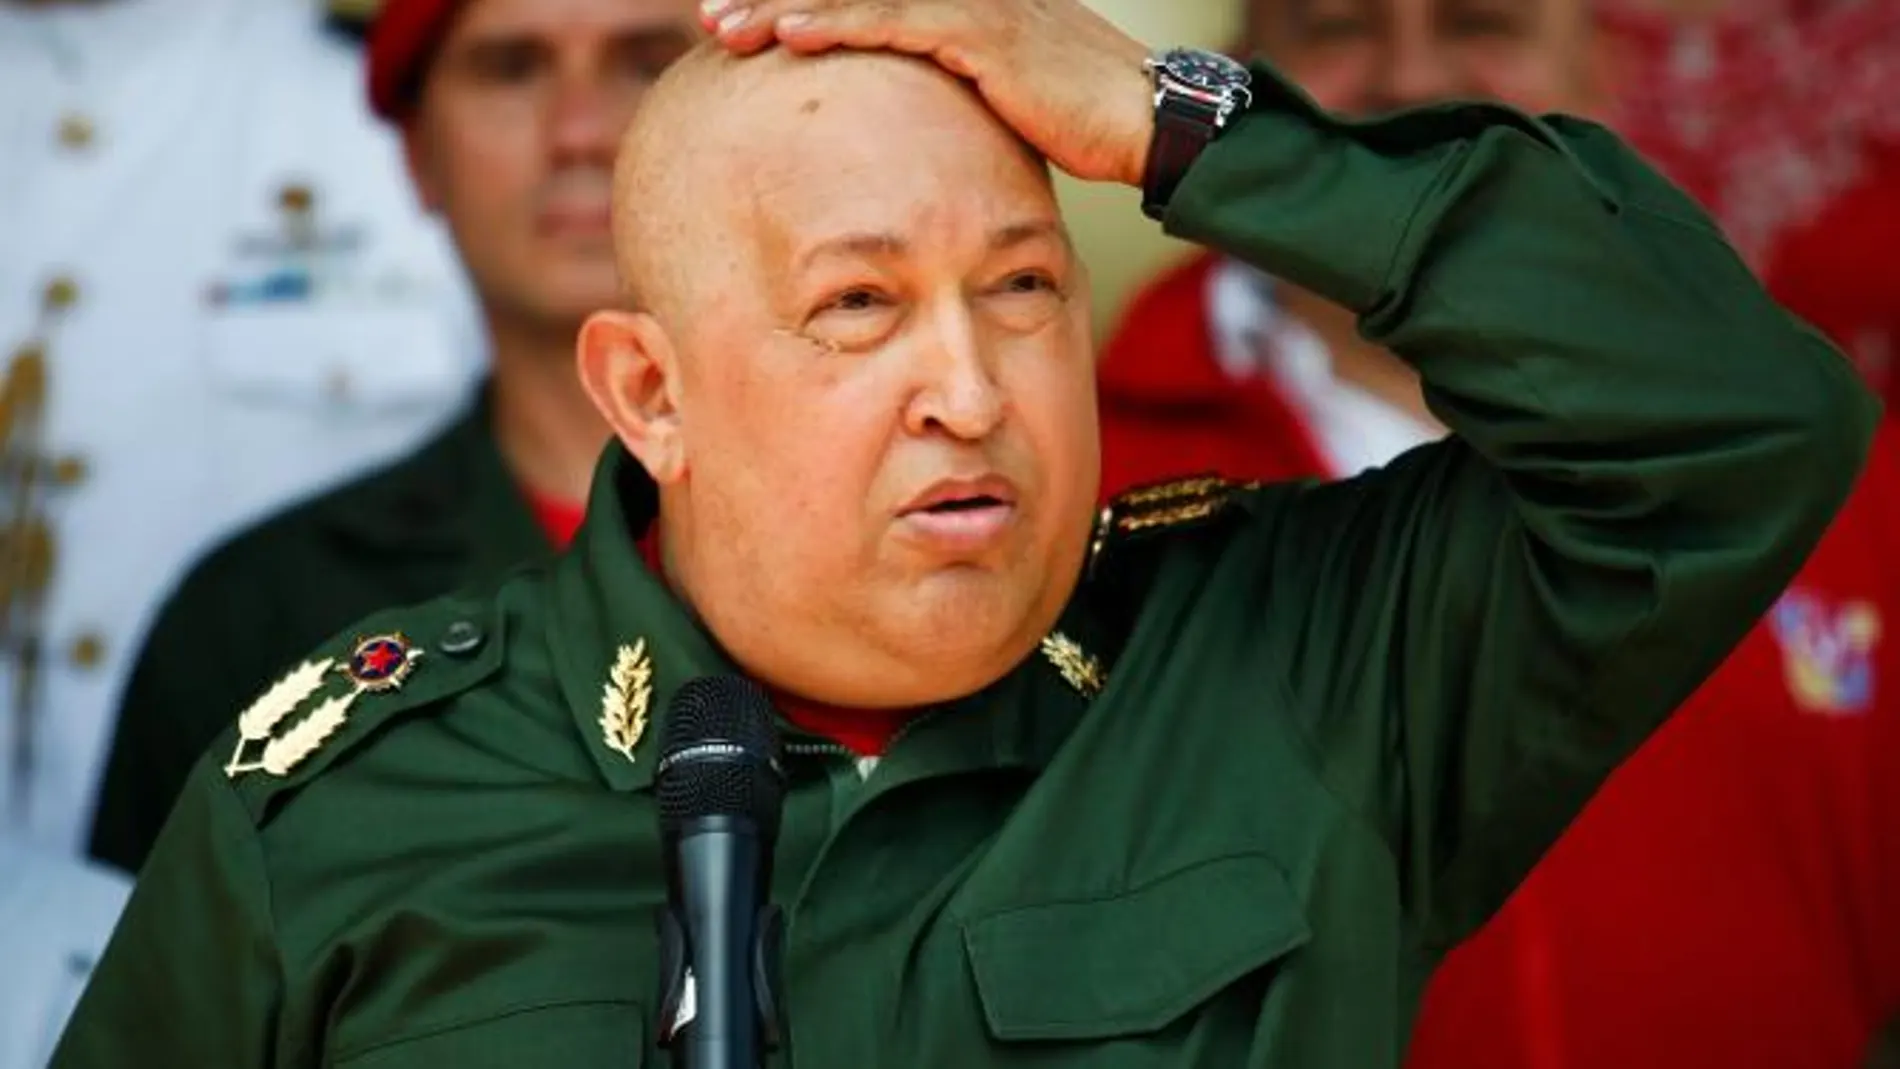 Venezuela niega que Chávez esté ingresado de urgencia